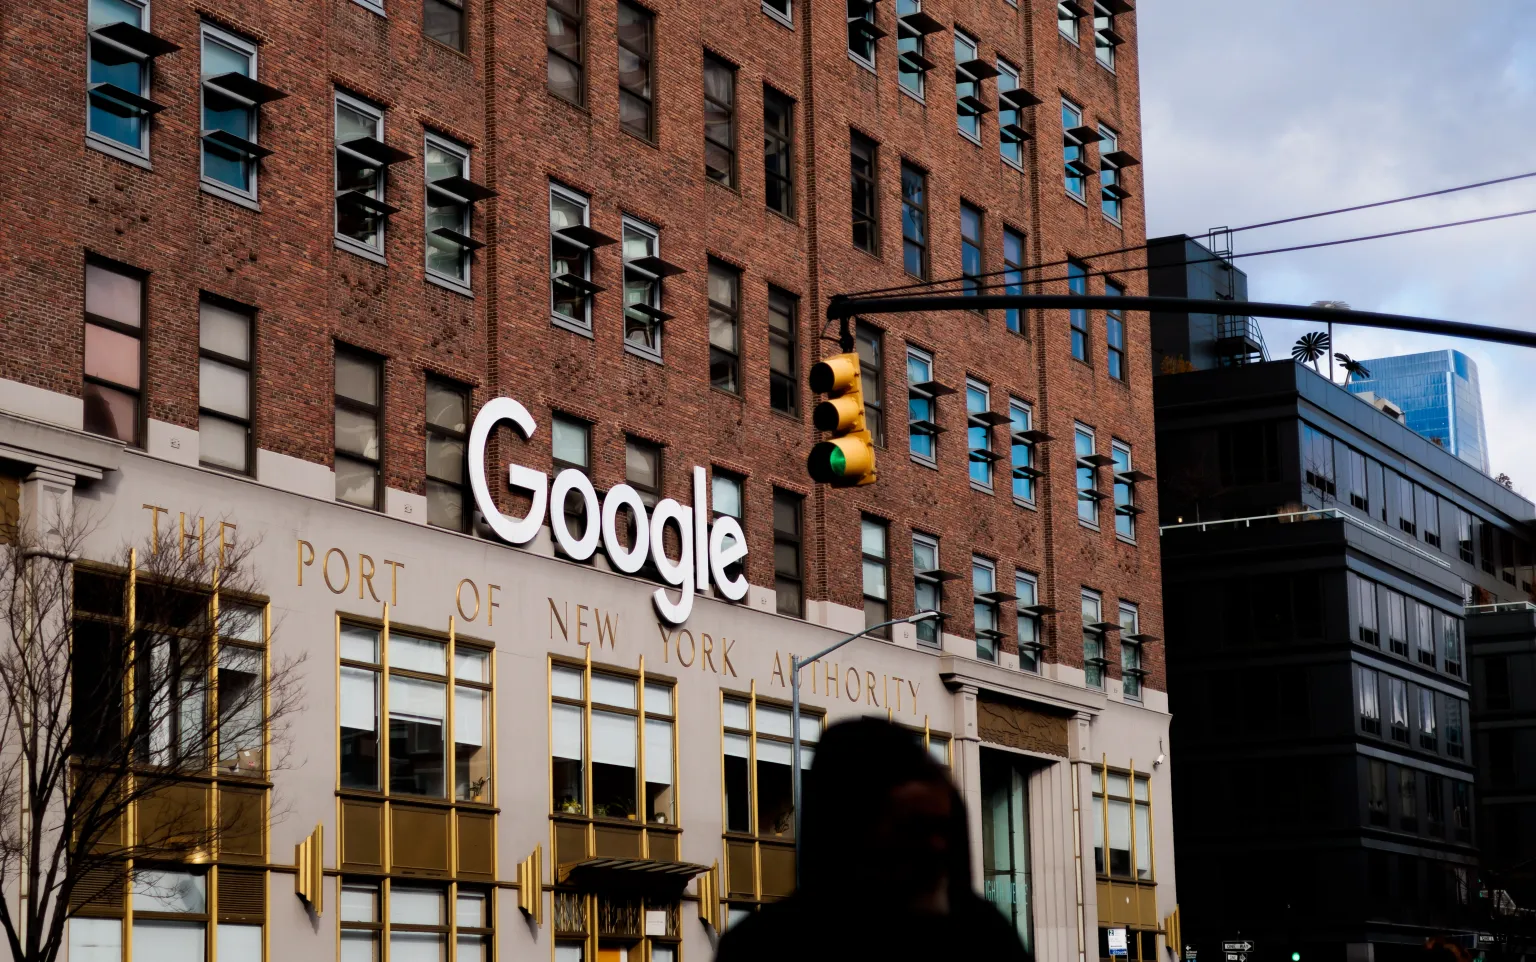 EU y Google chocan en último día del juicio que decidirá si el buscador es un monopolio